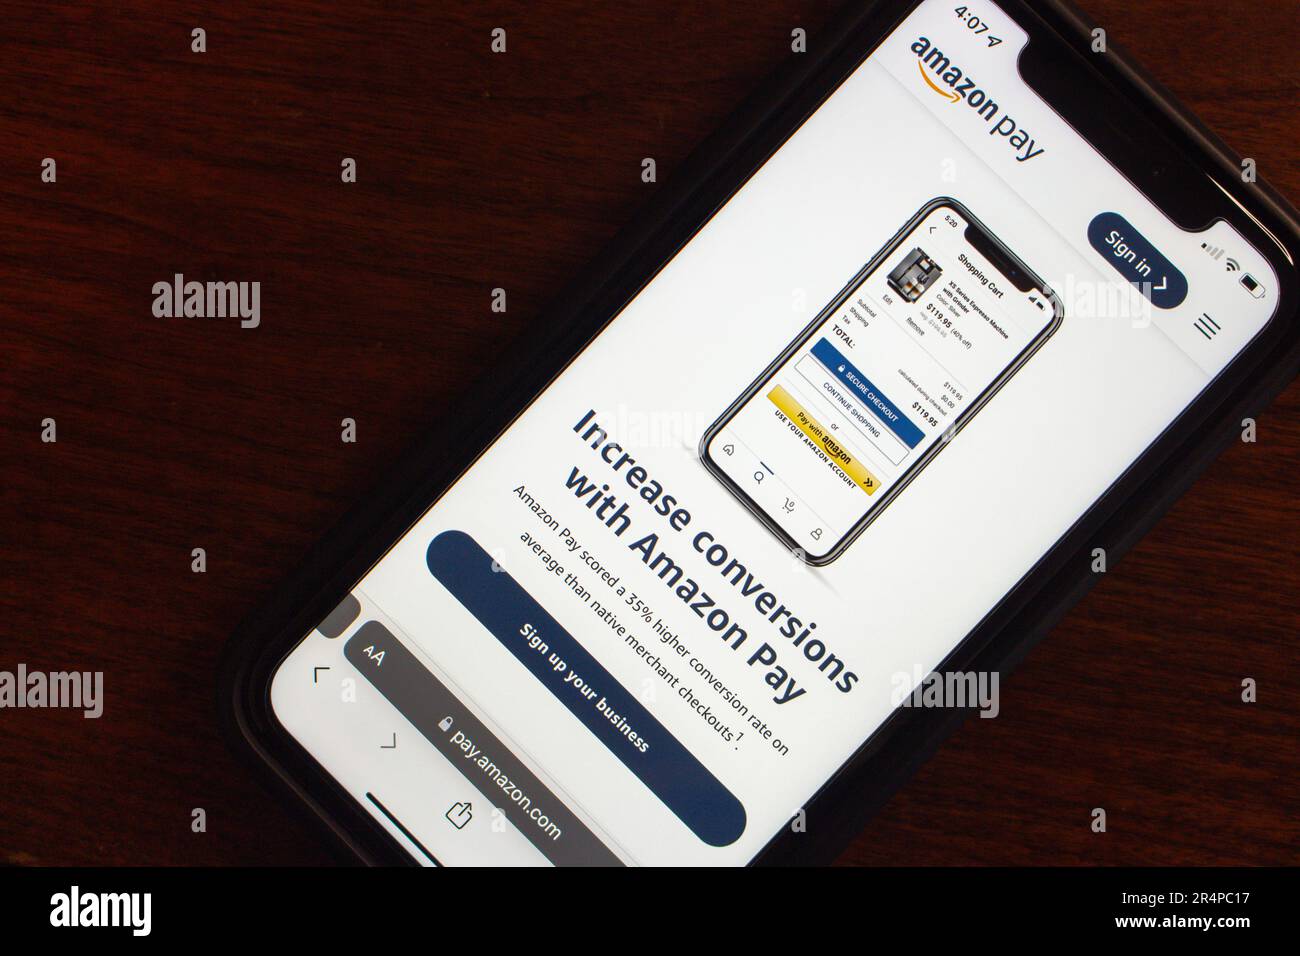 Site Web Amazon Pay affiché sur l'écran d'un iPhone. Amazon Pay est un service de paiement en ligne détenu par Amazon pour divers sites d'achat associés. Banque D'Images